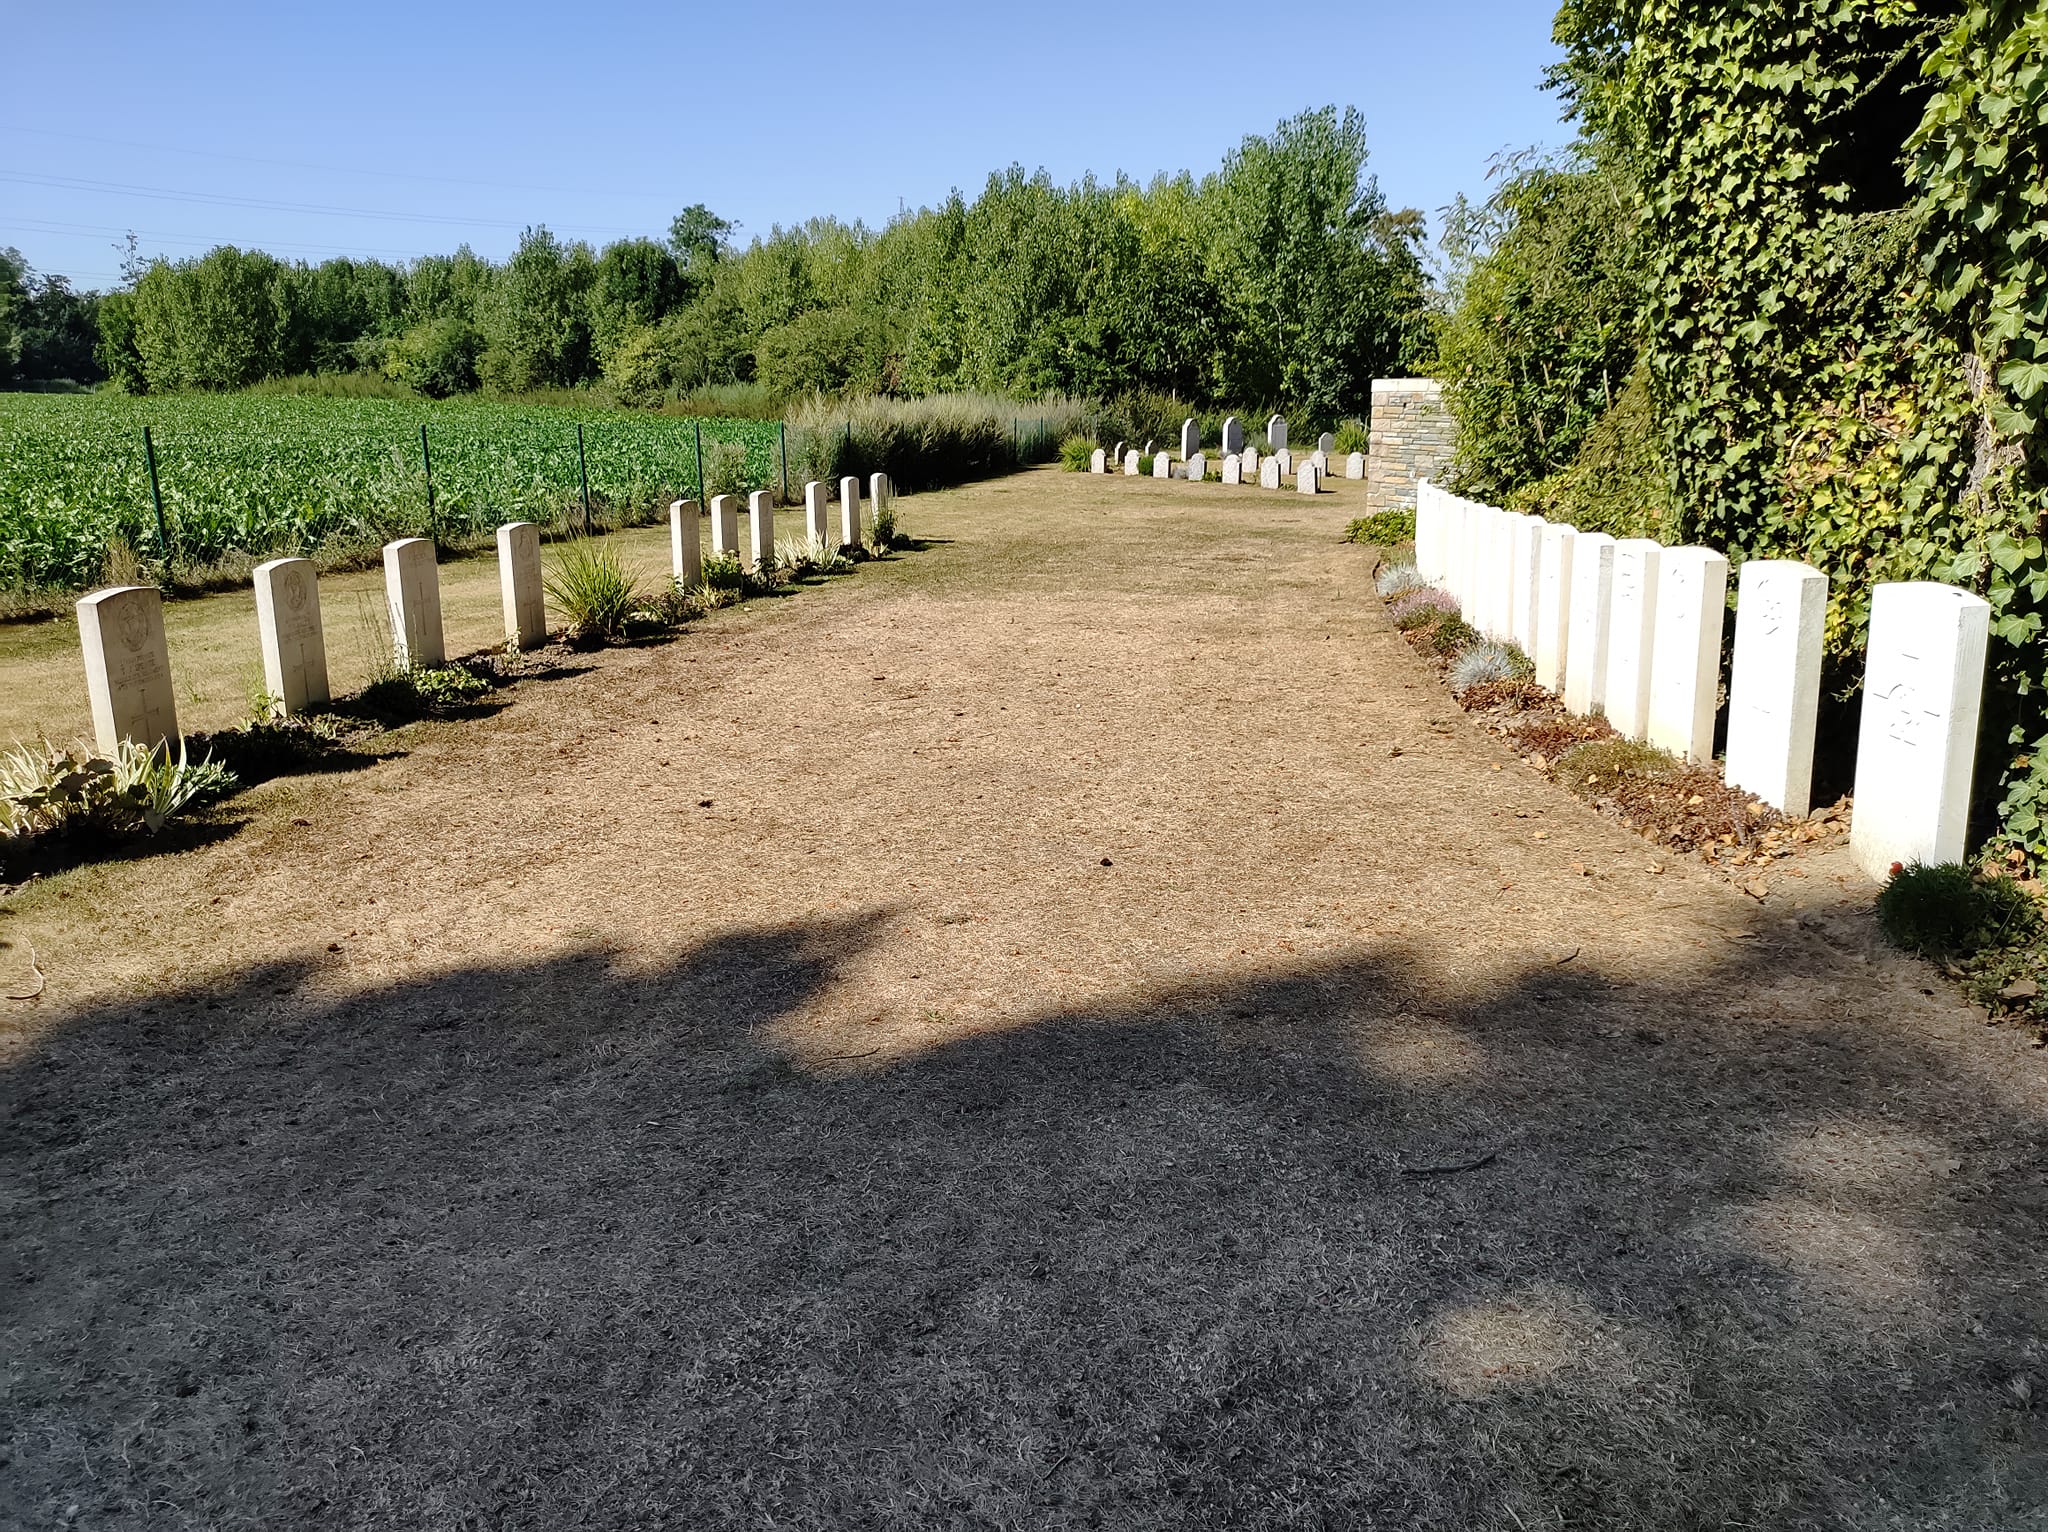 « Les tombes de 1914 et de 1918 sont à une distance de 10 pieds dans le cimetière de St-Symphorien pour signifier l’absence de gain à la suite de la guerre », écrit Ian-Loïc Doré sur sa page Facebook.